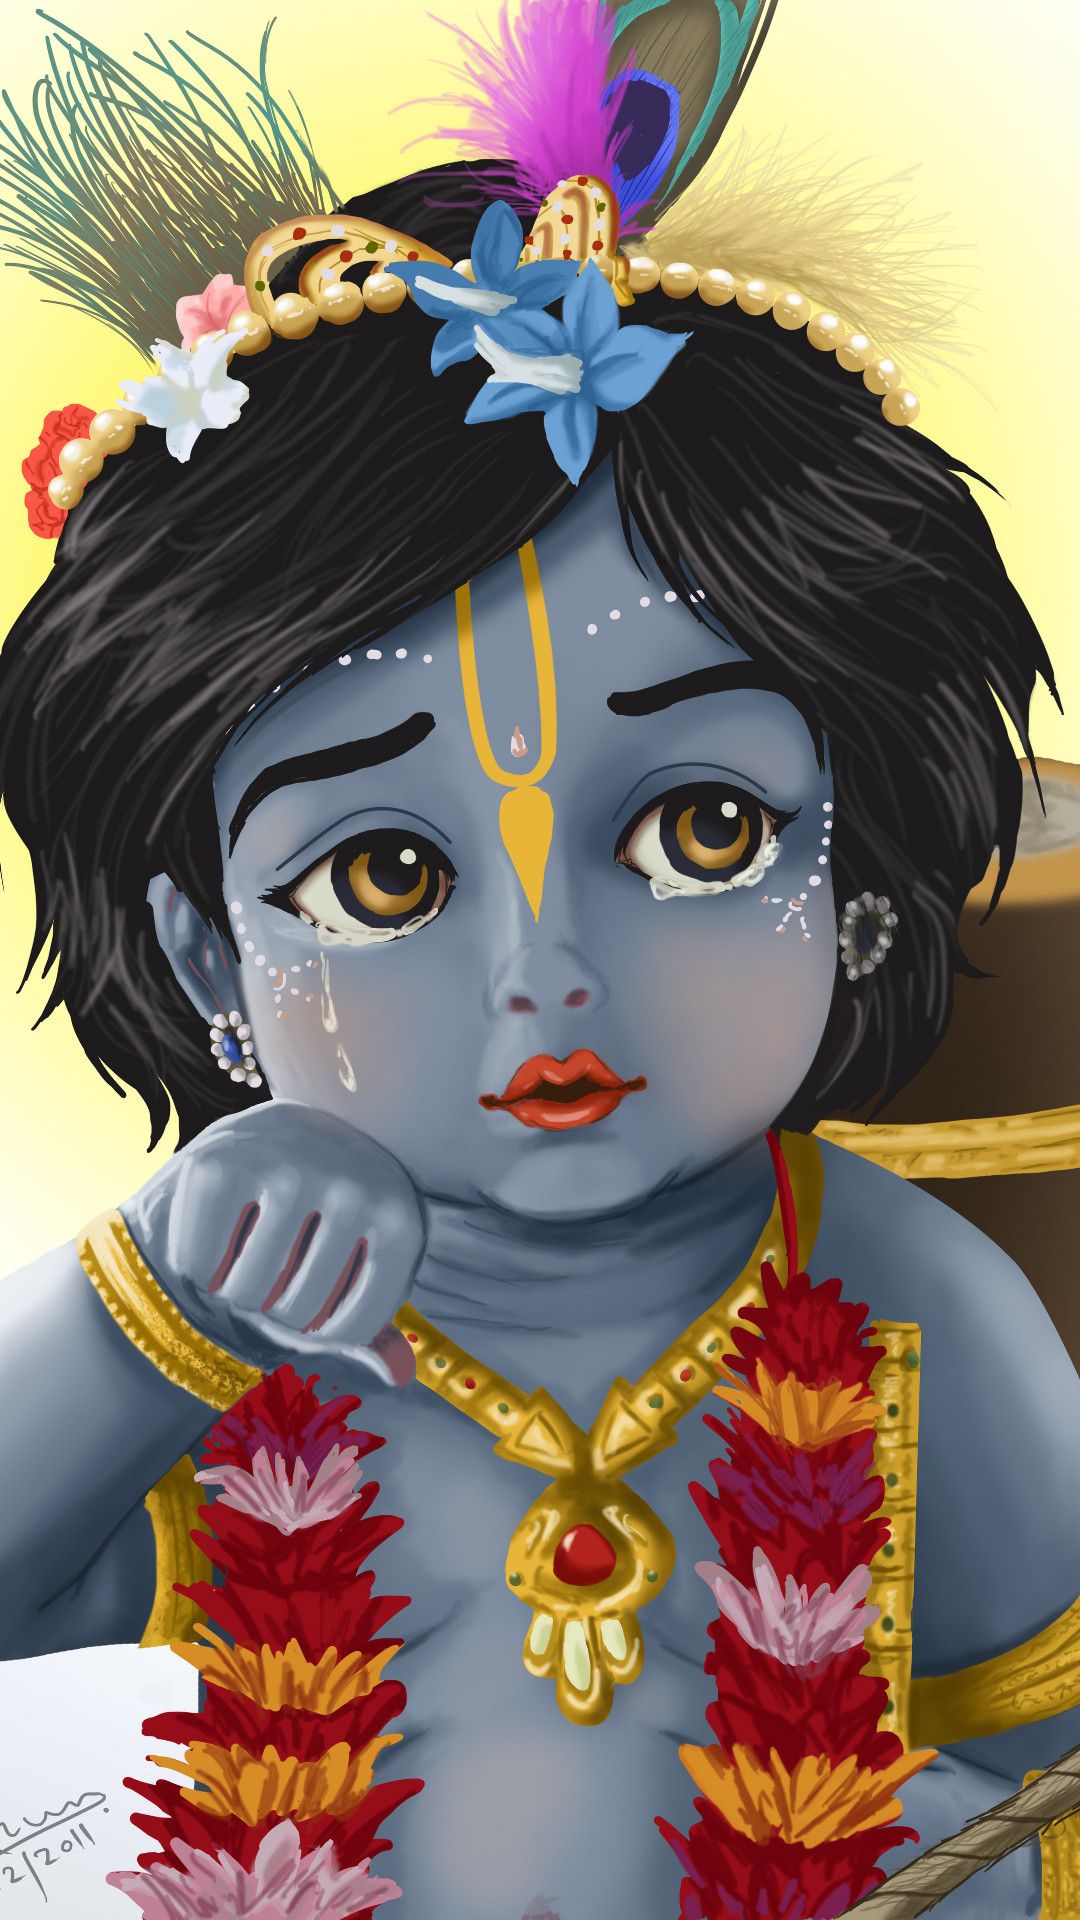 HD wallpaper: Cute Lord Krishna, Lord Krishna illustration, God,  representation | Wallpaper Flare